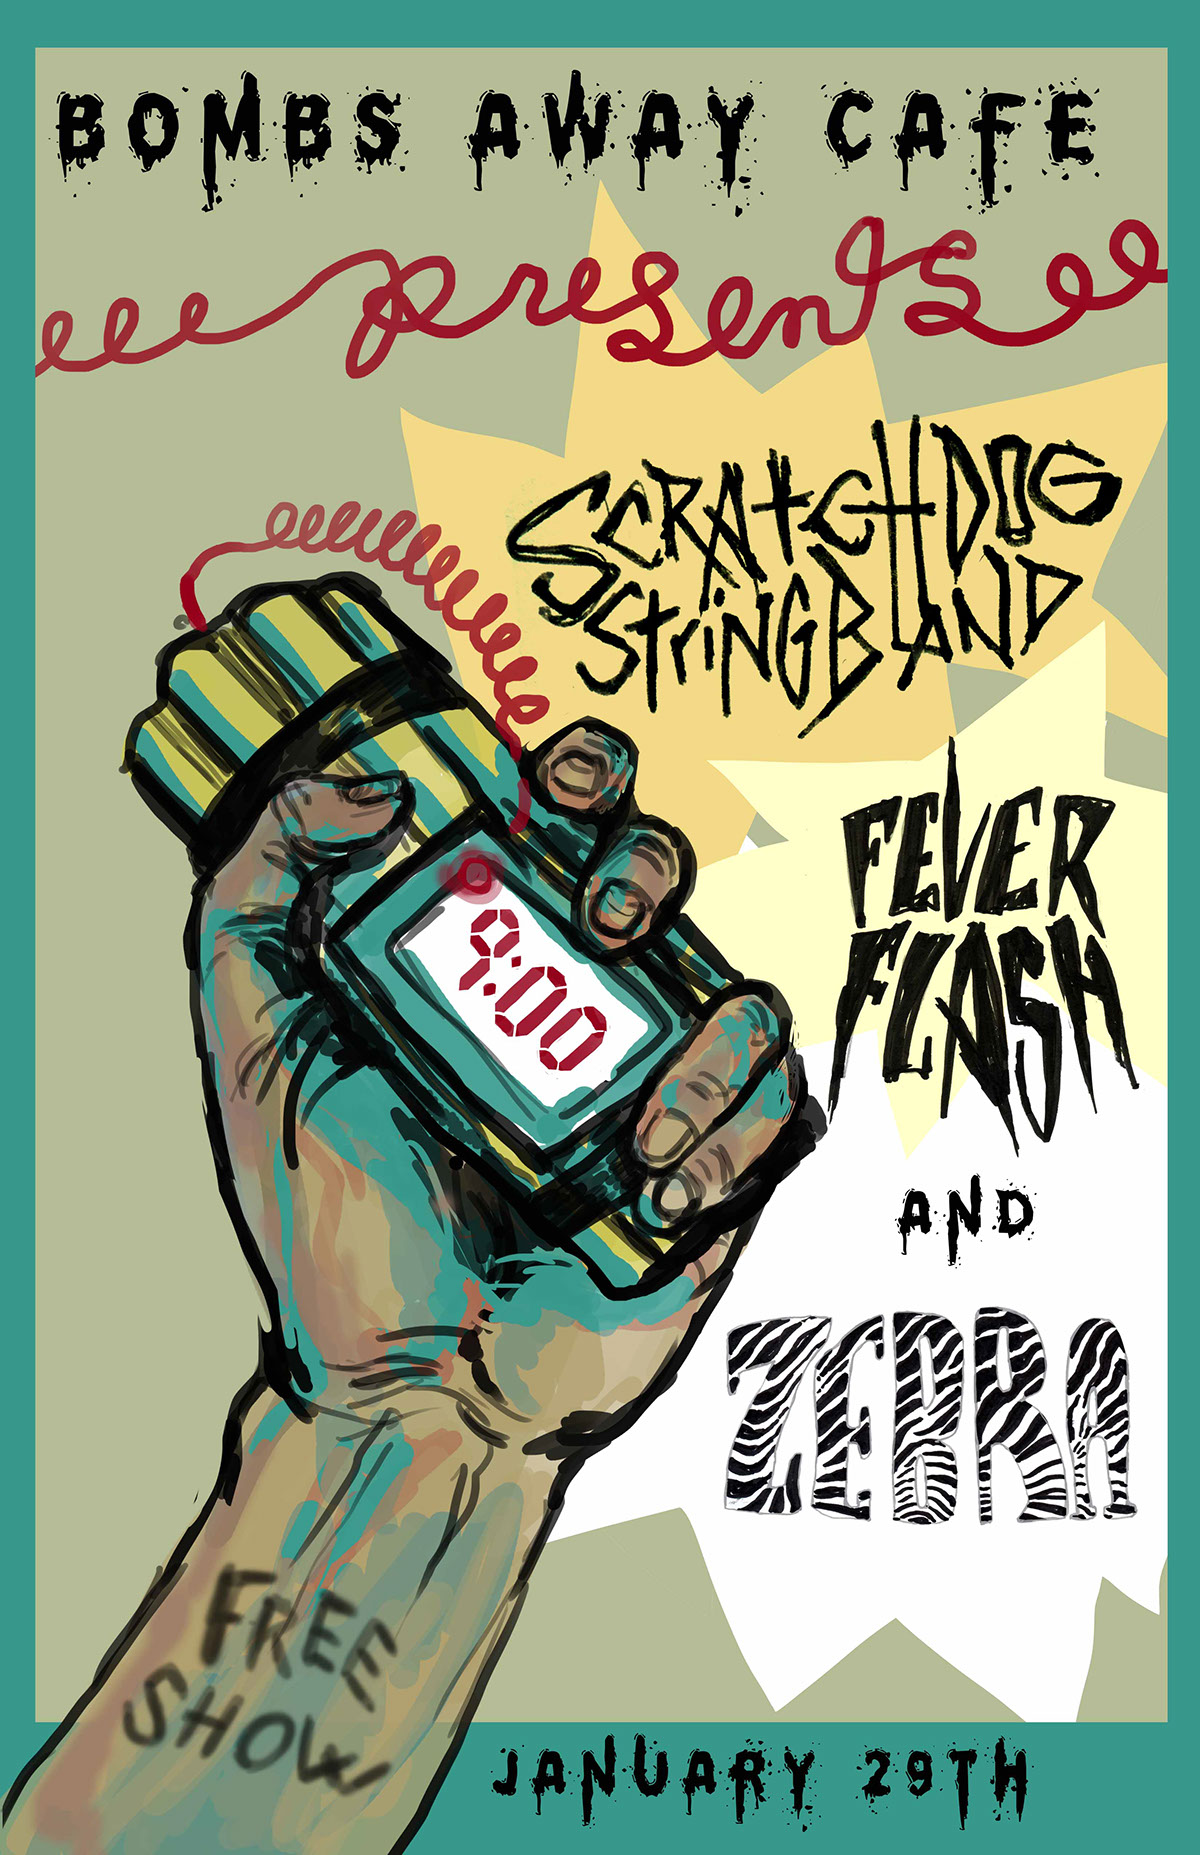 scratchdog stringband bluegrass band poster art design artwork festival